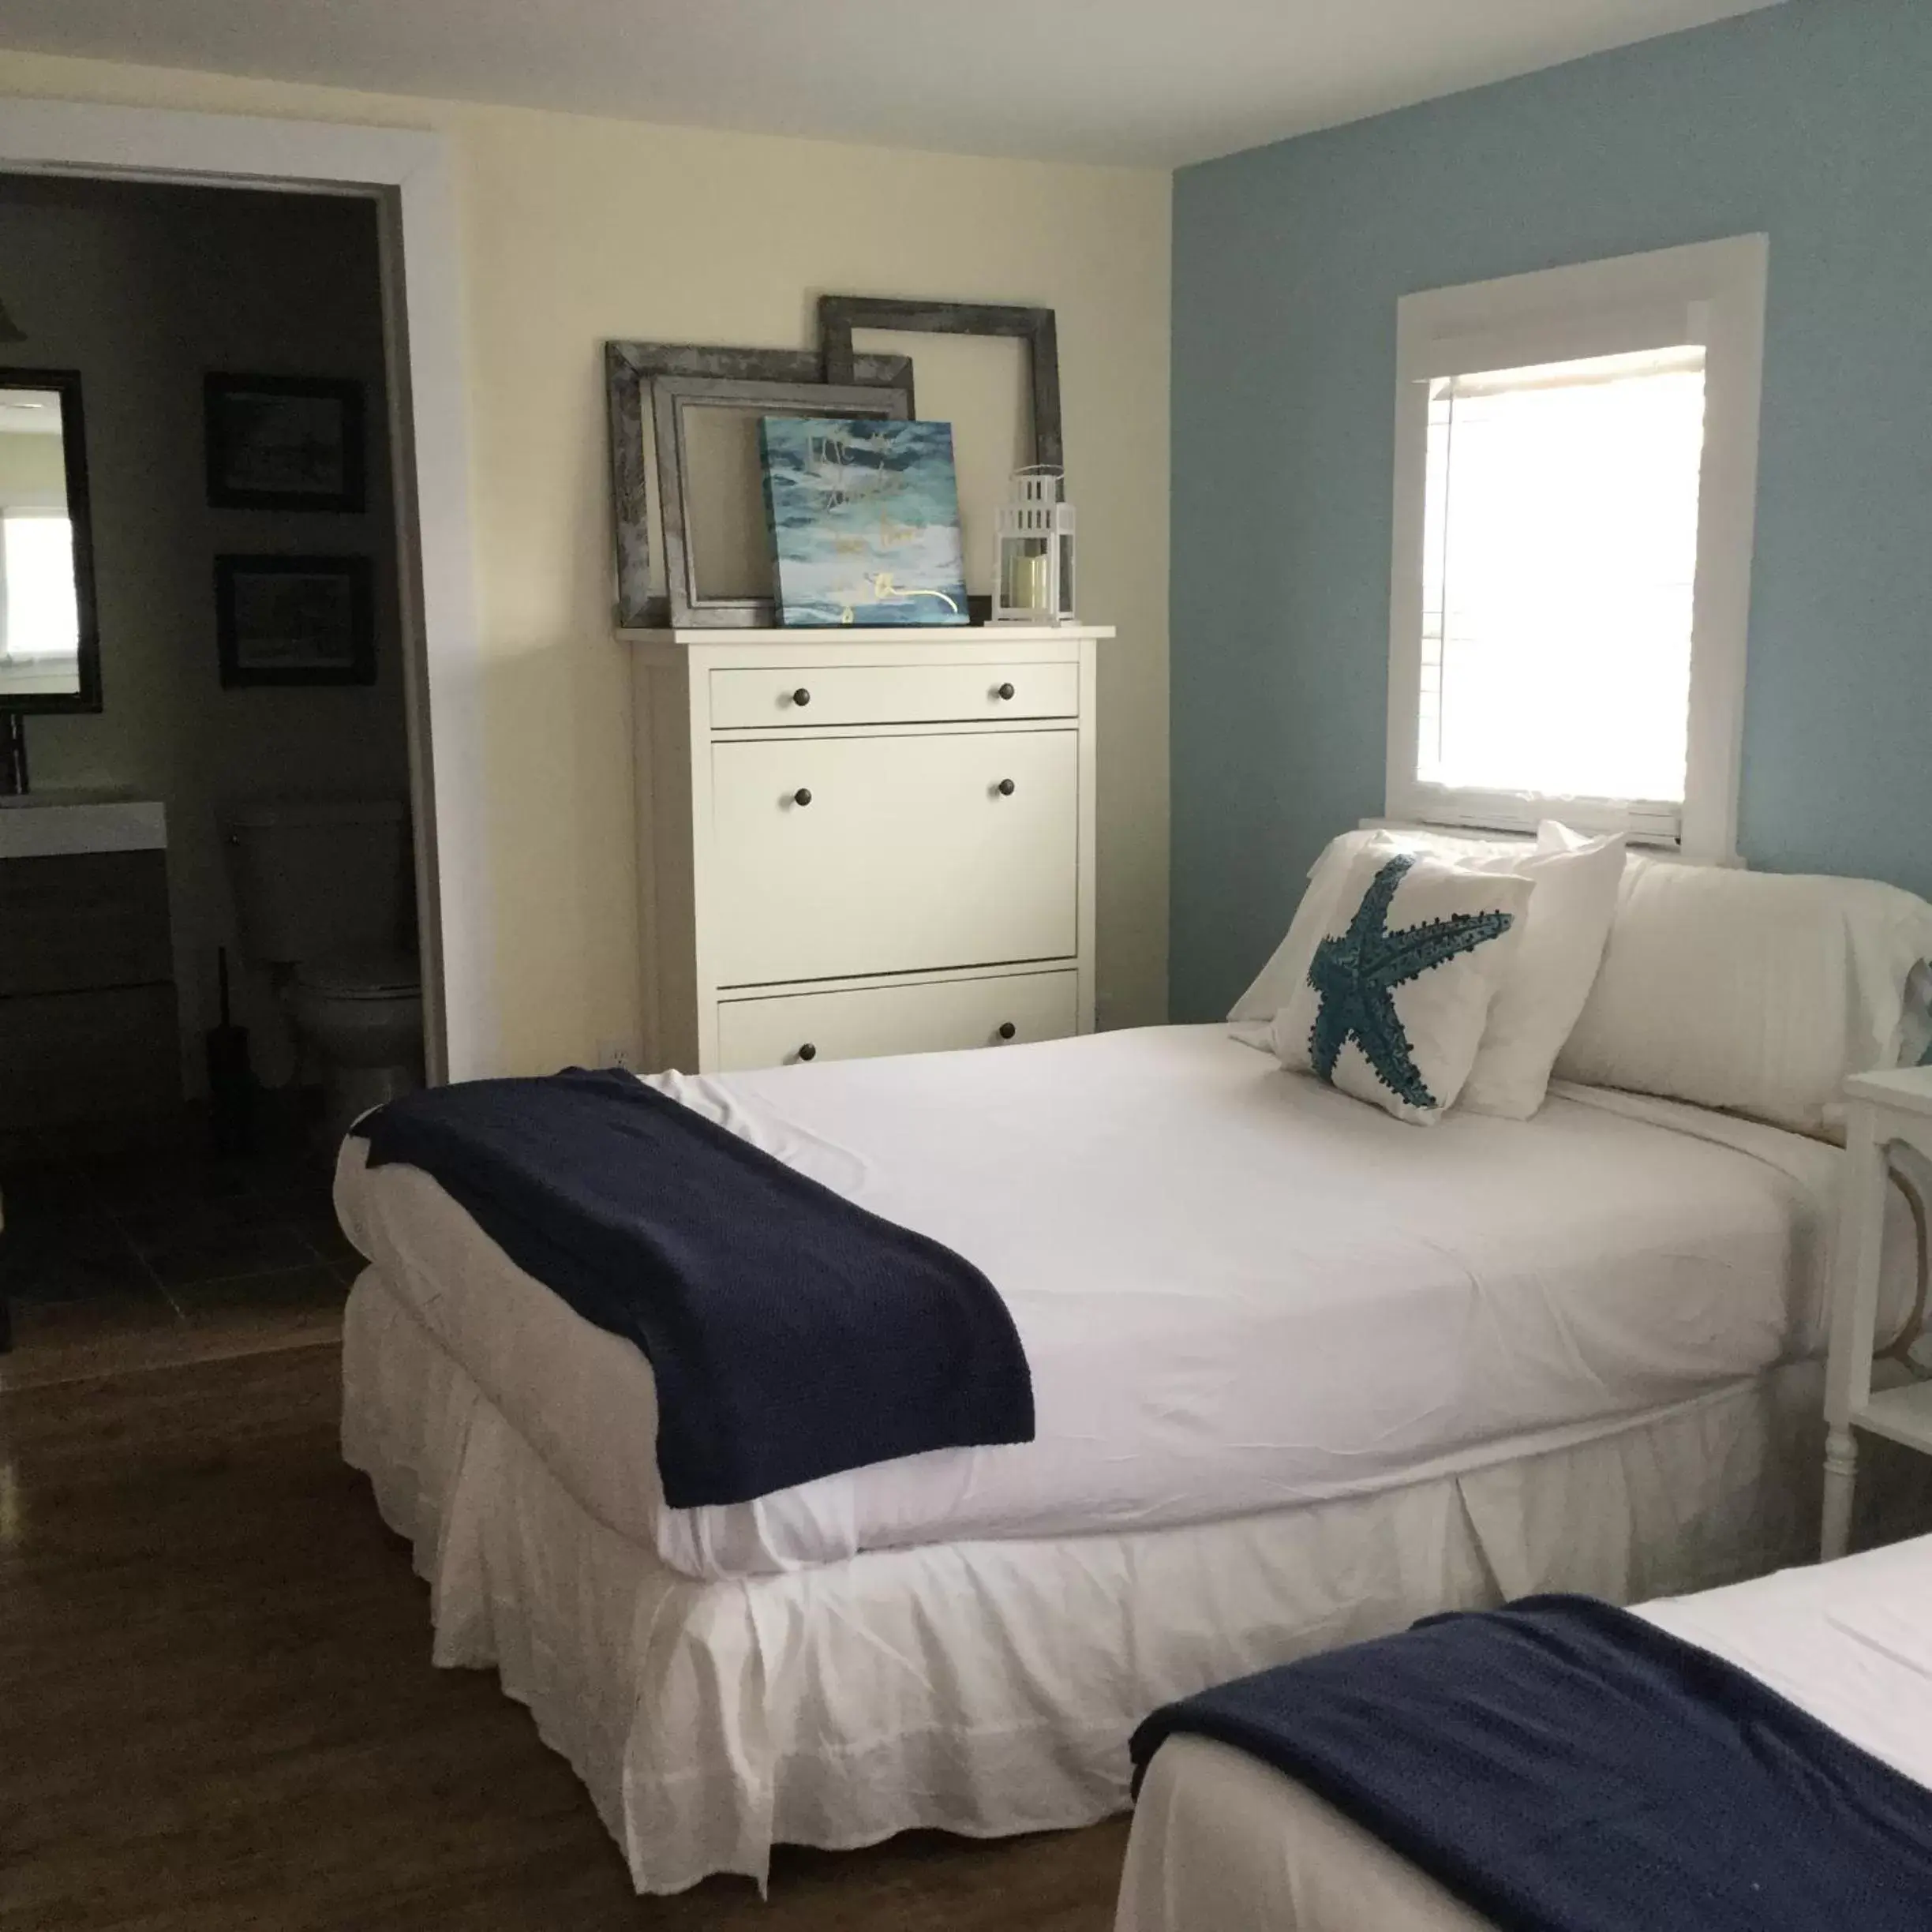 Bed, Room Photo in Ocean Manor 1100 Inn